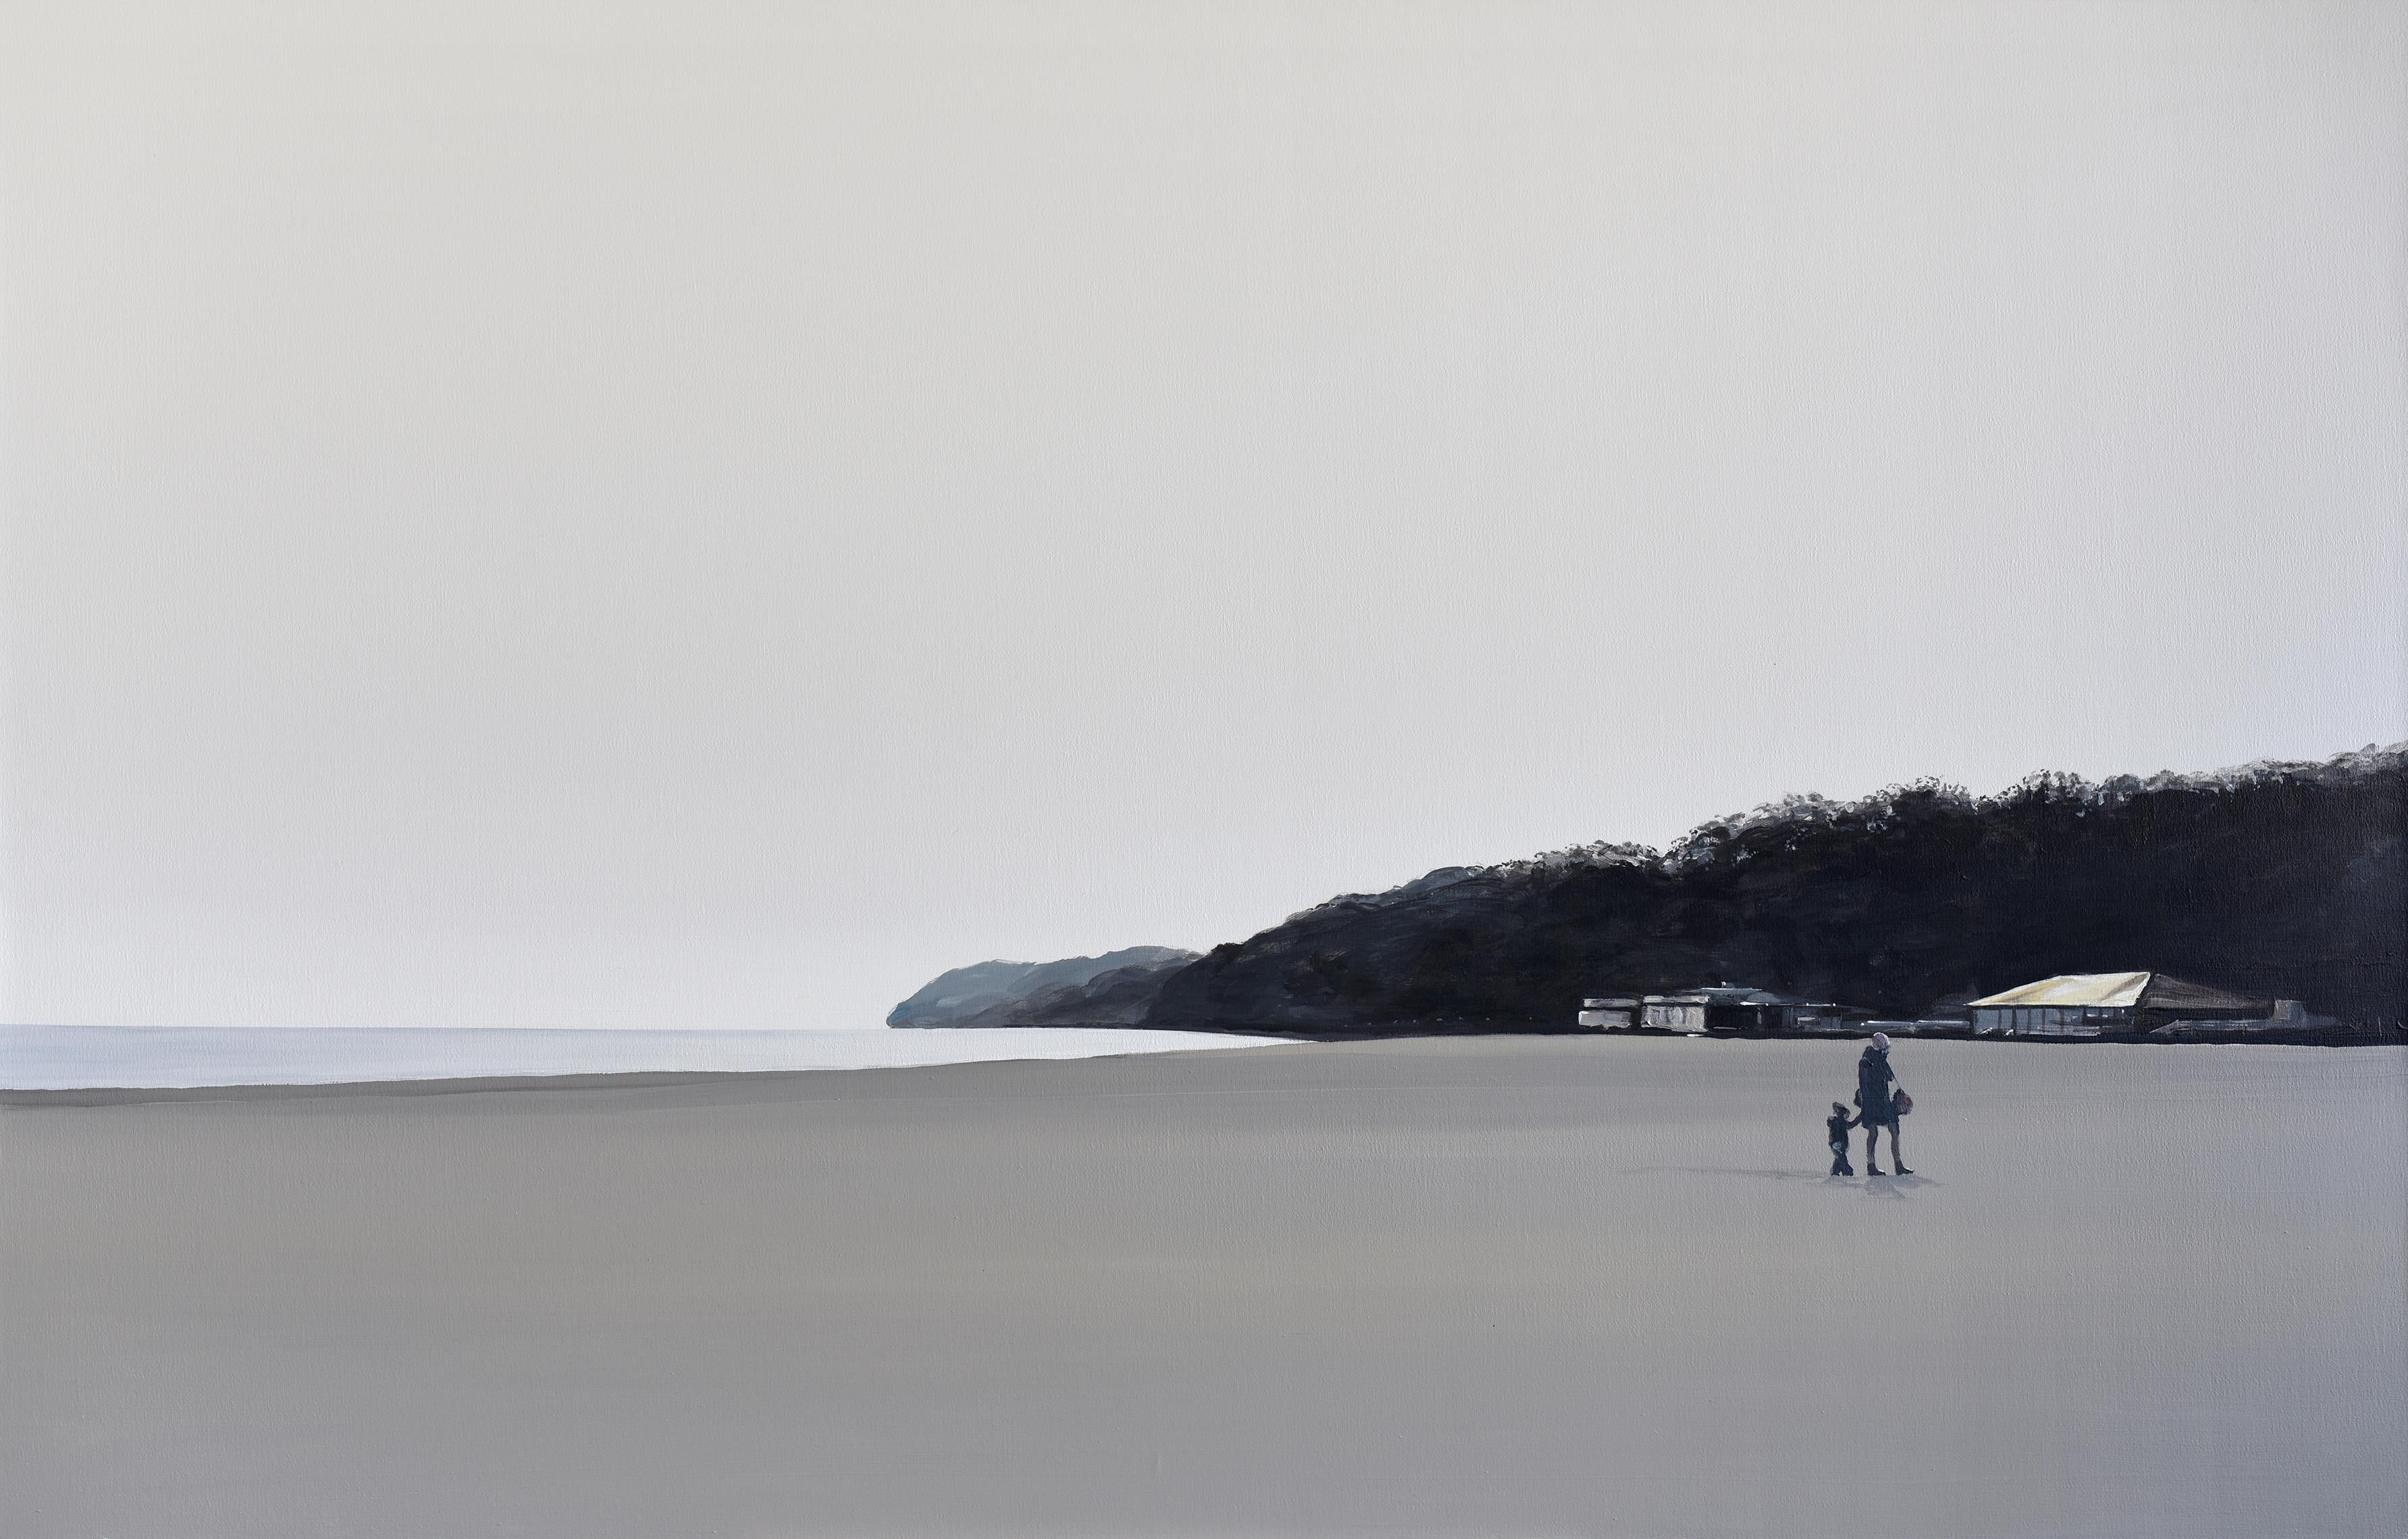 The Beach, Modernes figuratives Landschaftsgemälde, minimalistisch, Meeresansicht